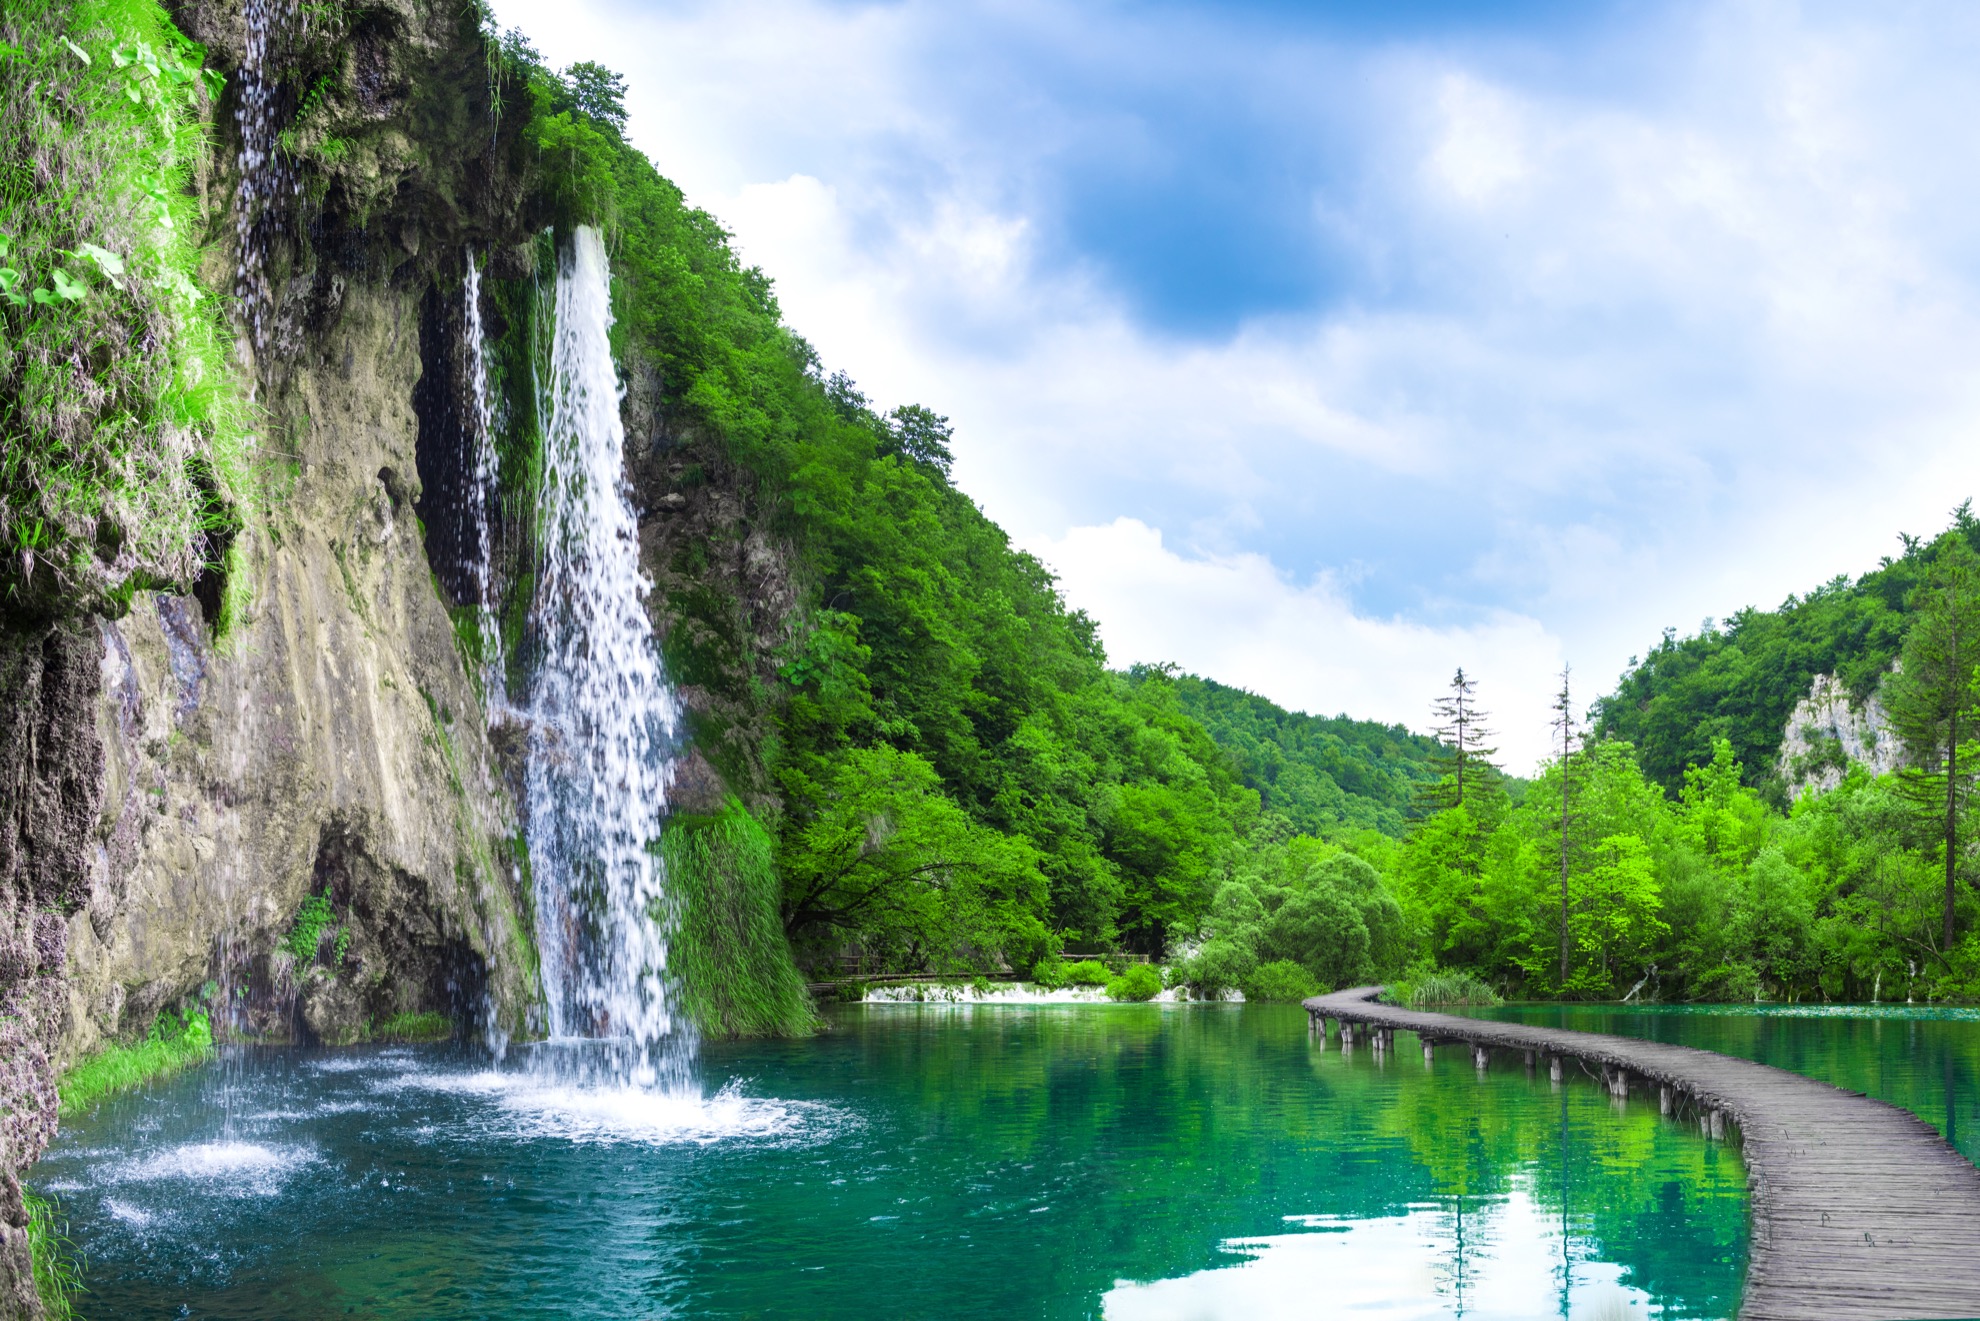 Cascadas se unen a 16 lagos naturales en el impresionante Parque Nacional Plitvice Lakes de Croacia - 13